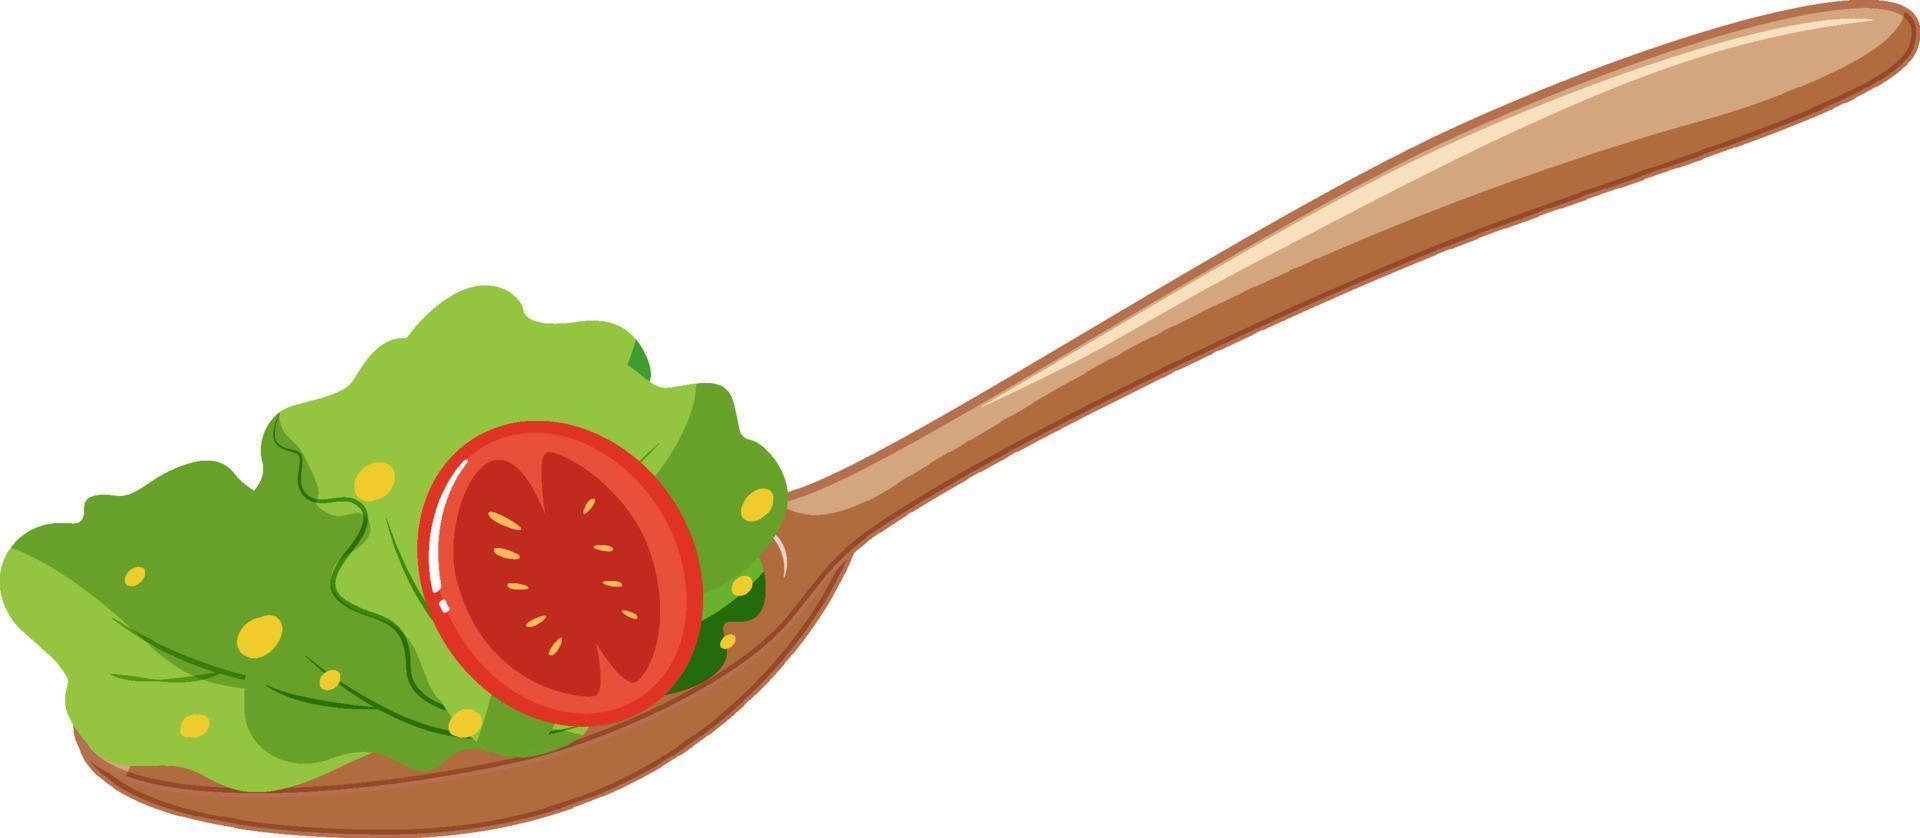 ensalada de verduras en una cuchara vector